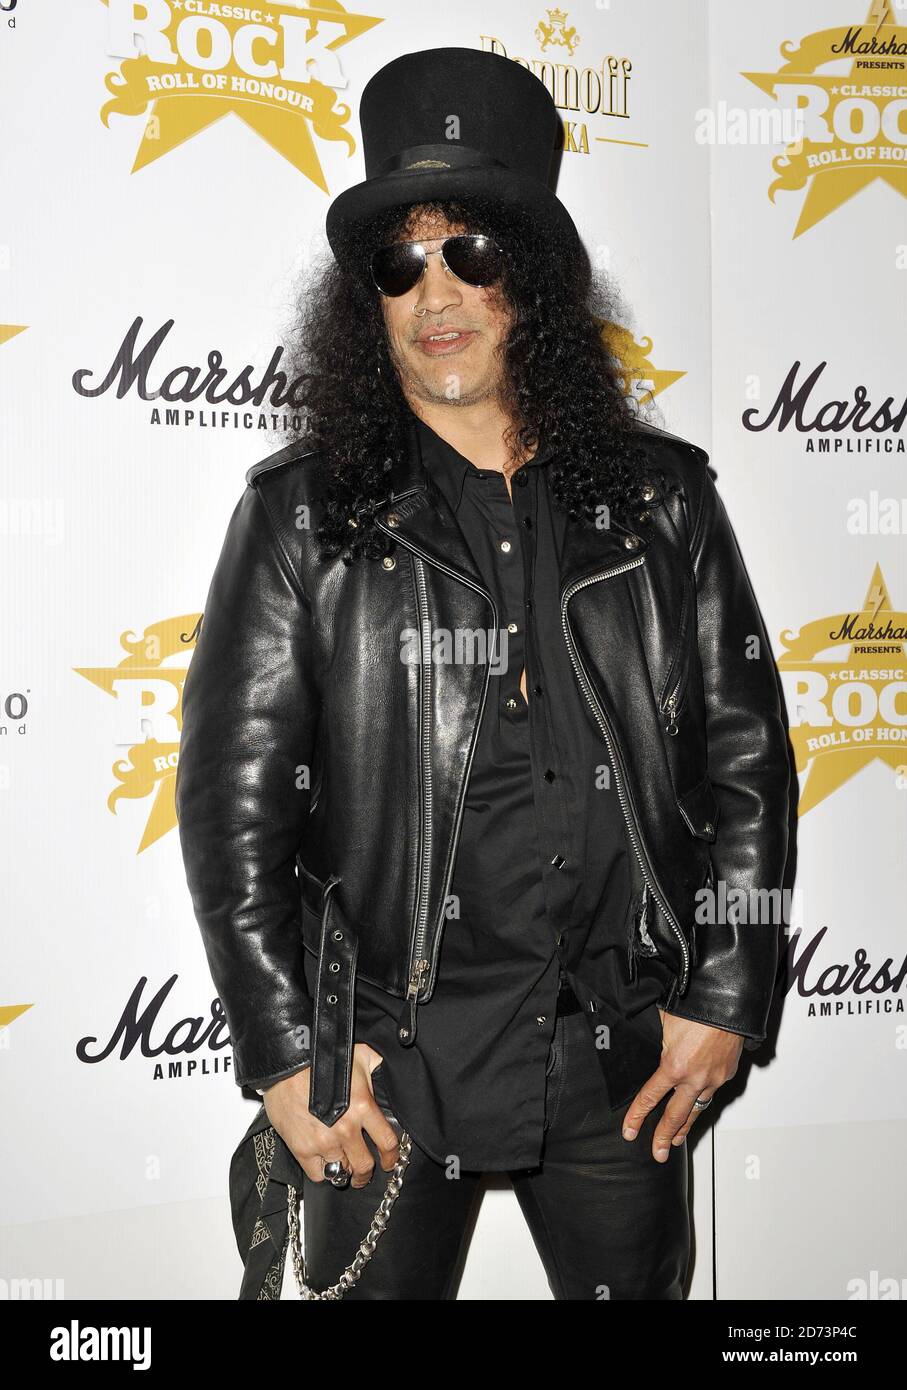 Slash arrive au Classic Rock Roll of Honor Awards 2009 qui se tient à l'hôtel Park Lane dans le centre de Londres. Banque D'Images